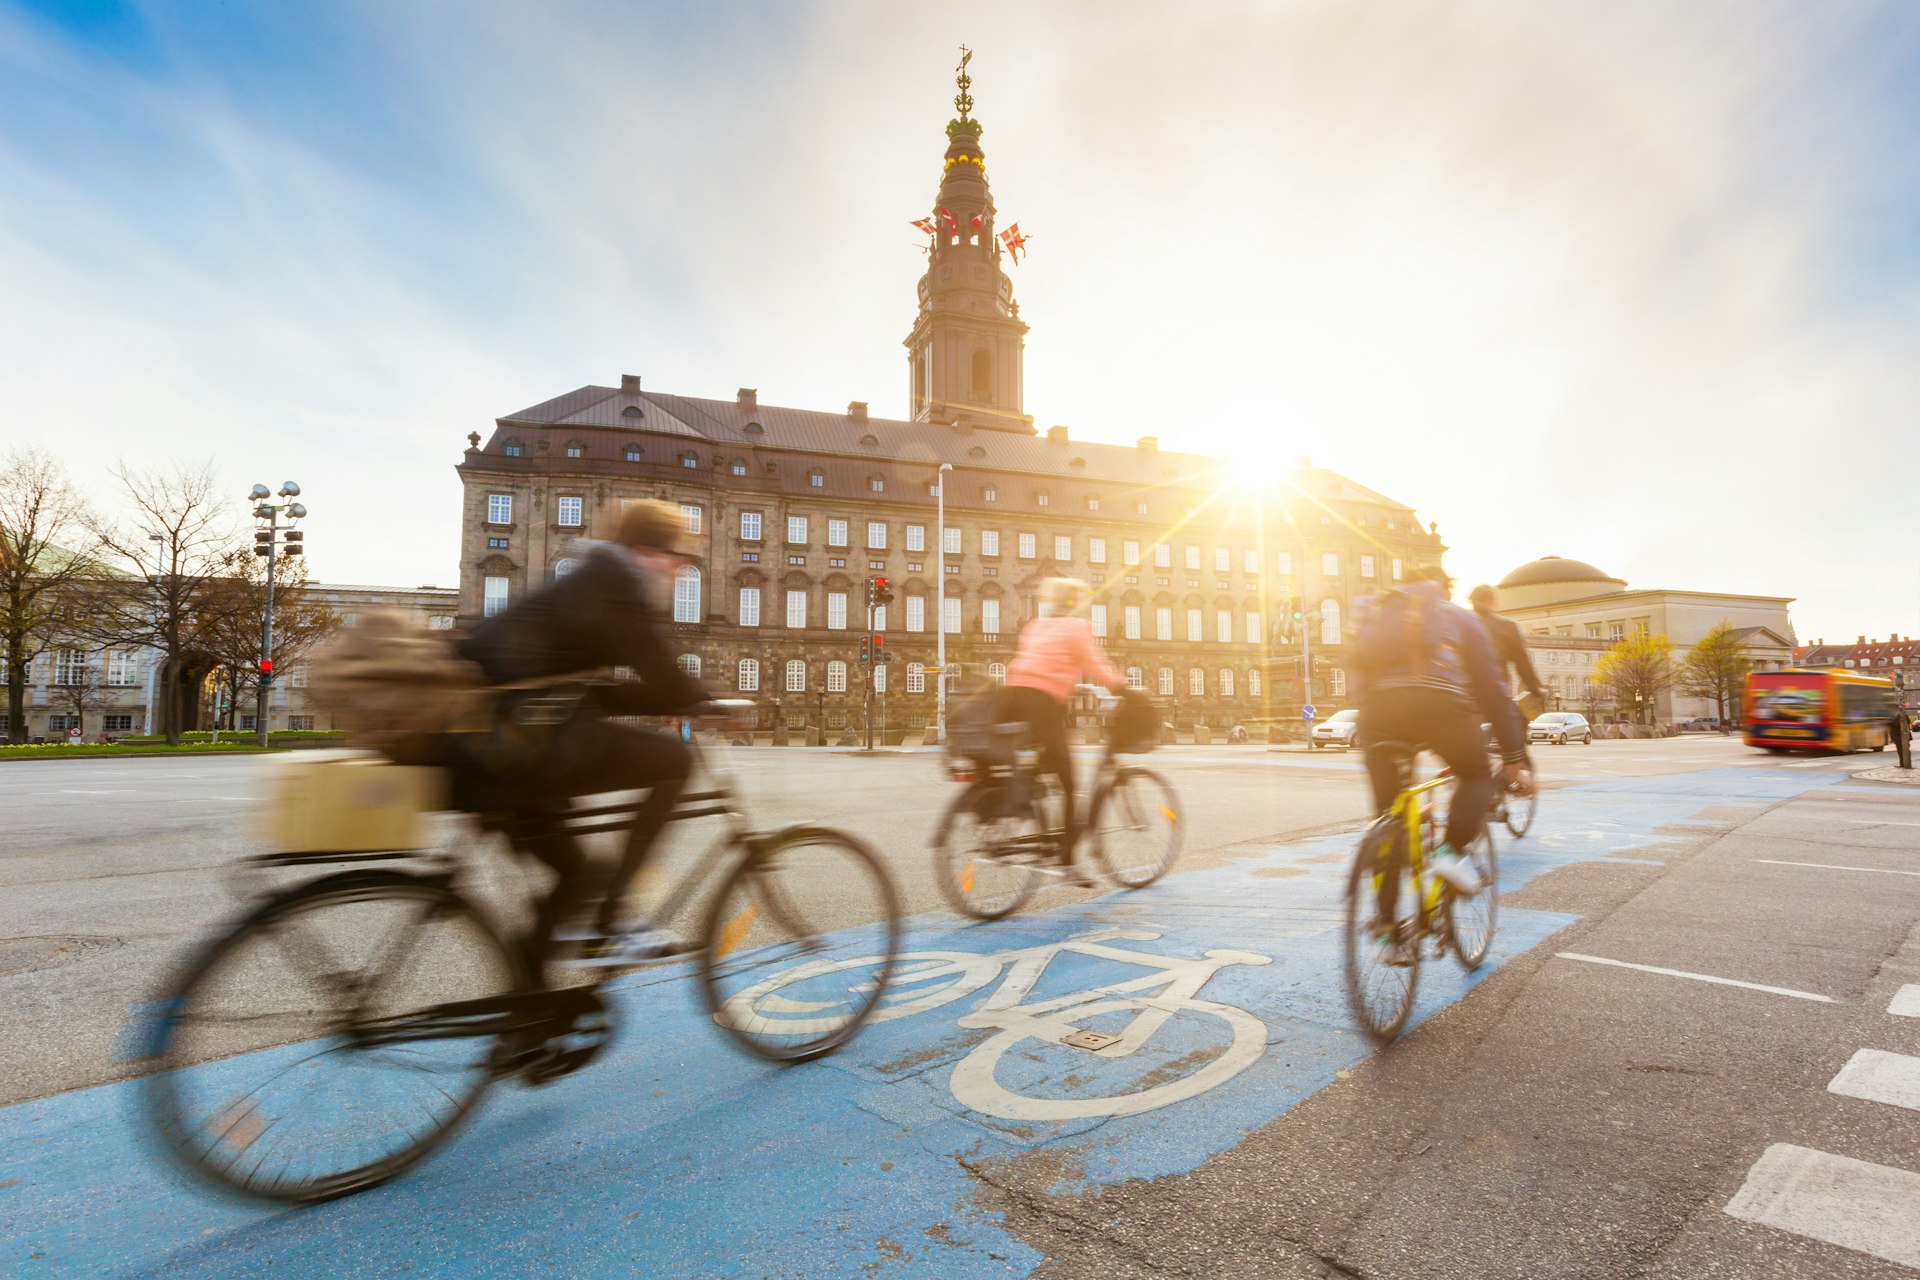 People cycle in a blue bike lane in Copenhagen